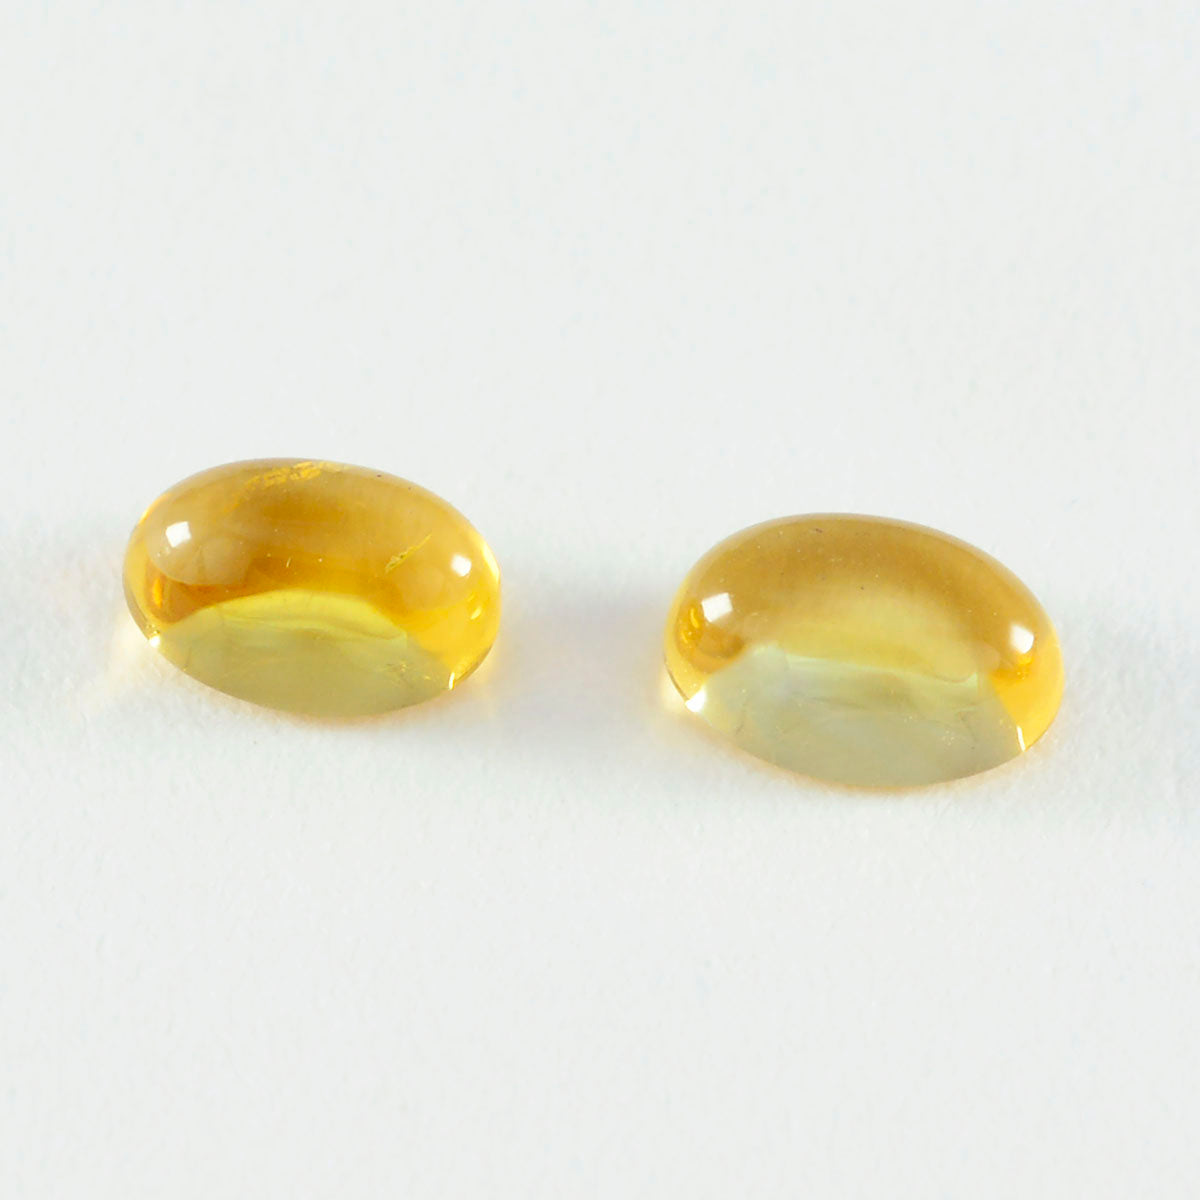 Riyogems 1PC gele citrien cabochon 9x11 mm ovale vorm uitstekende kwaliteit edelsteen